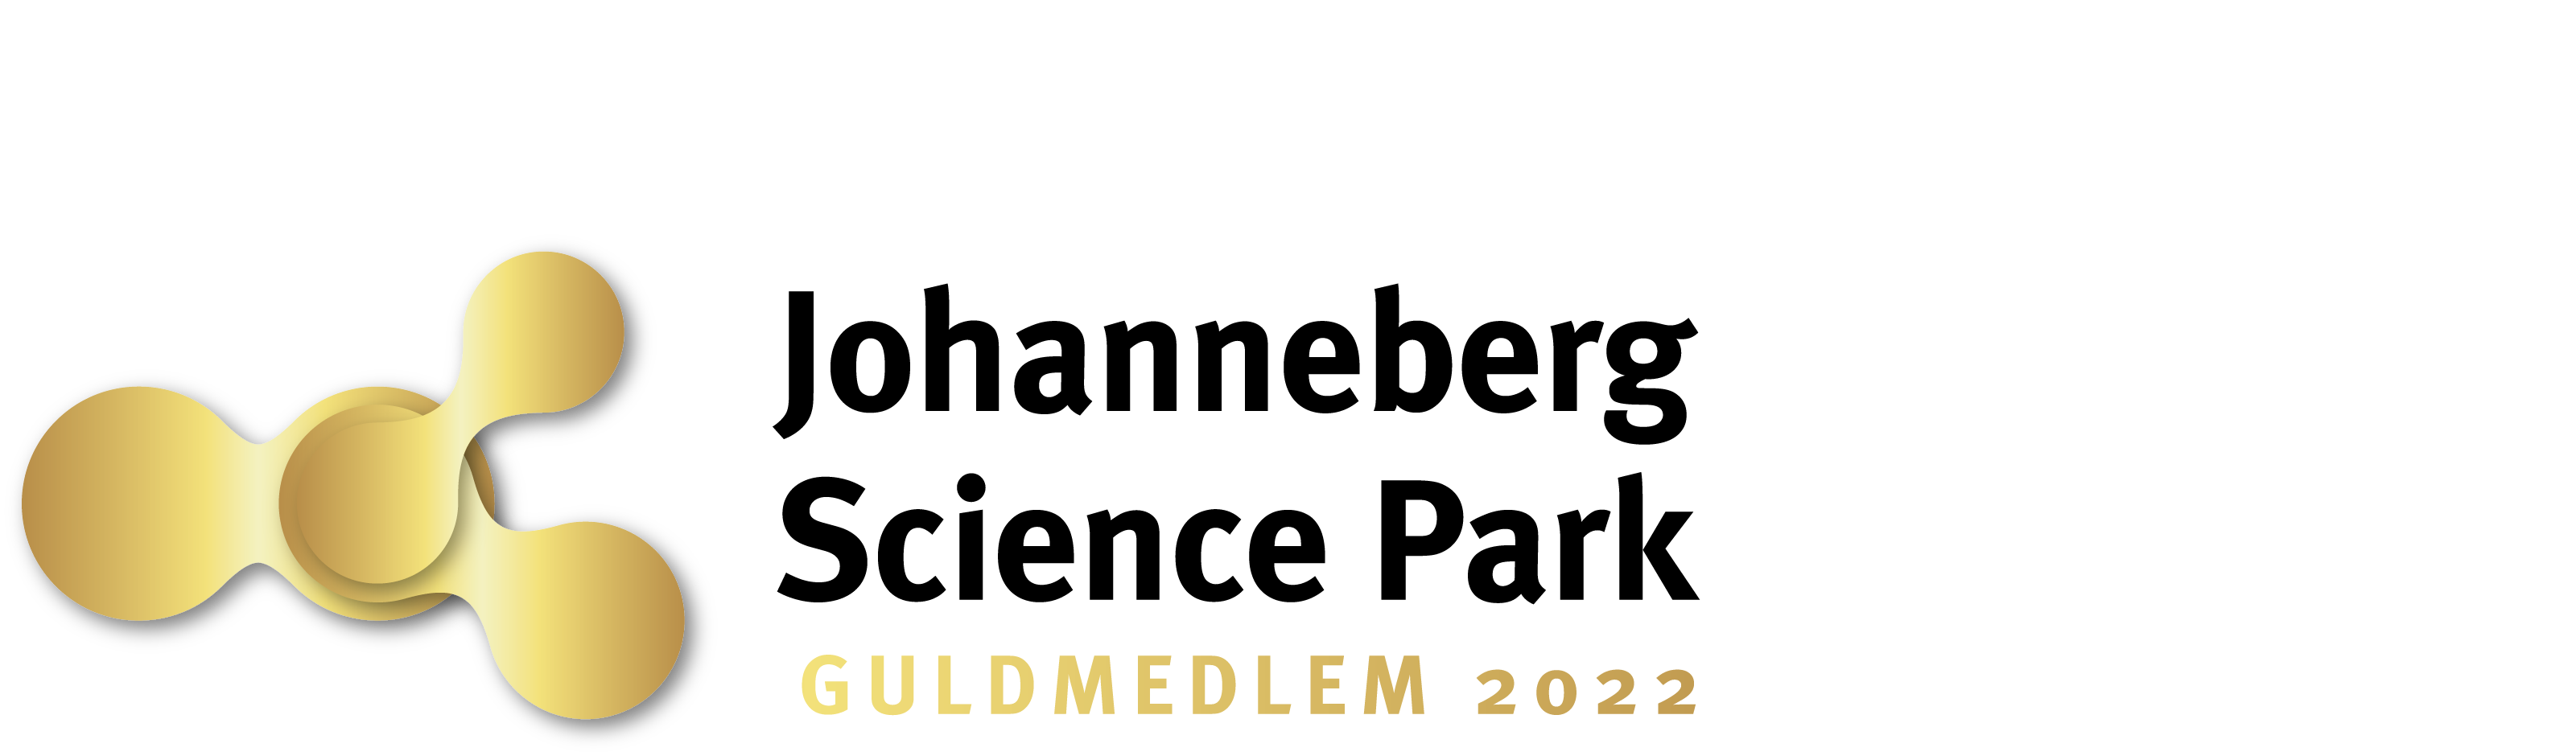 logo guld 2022